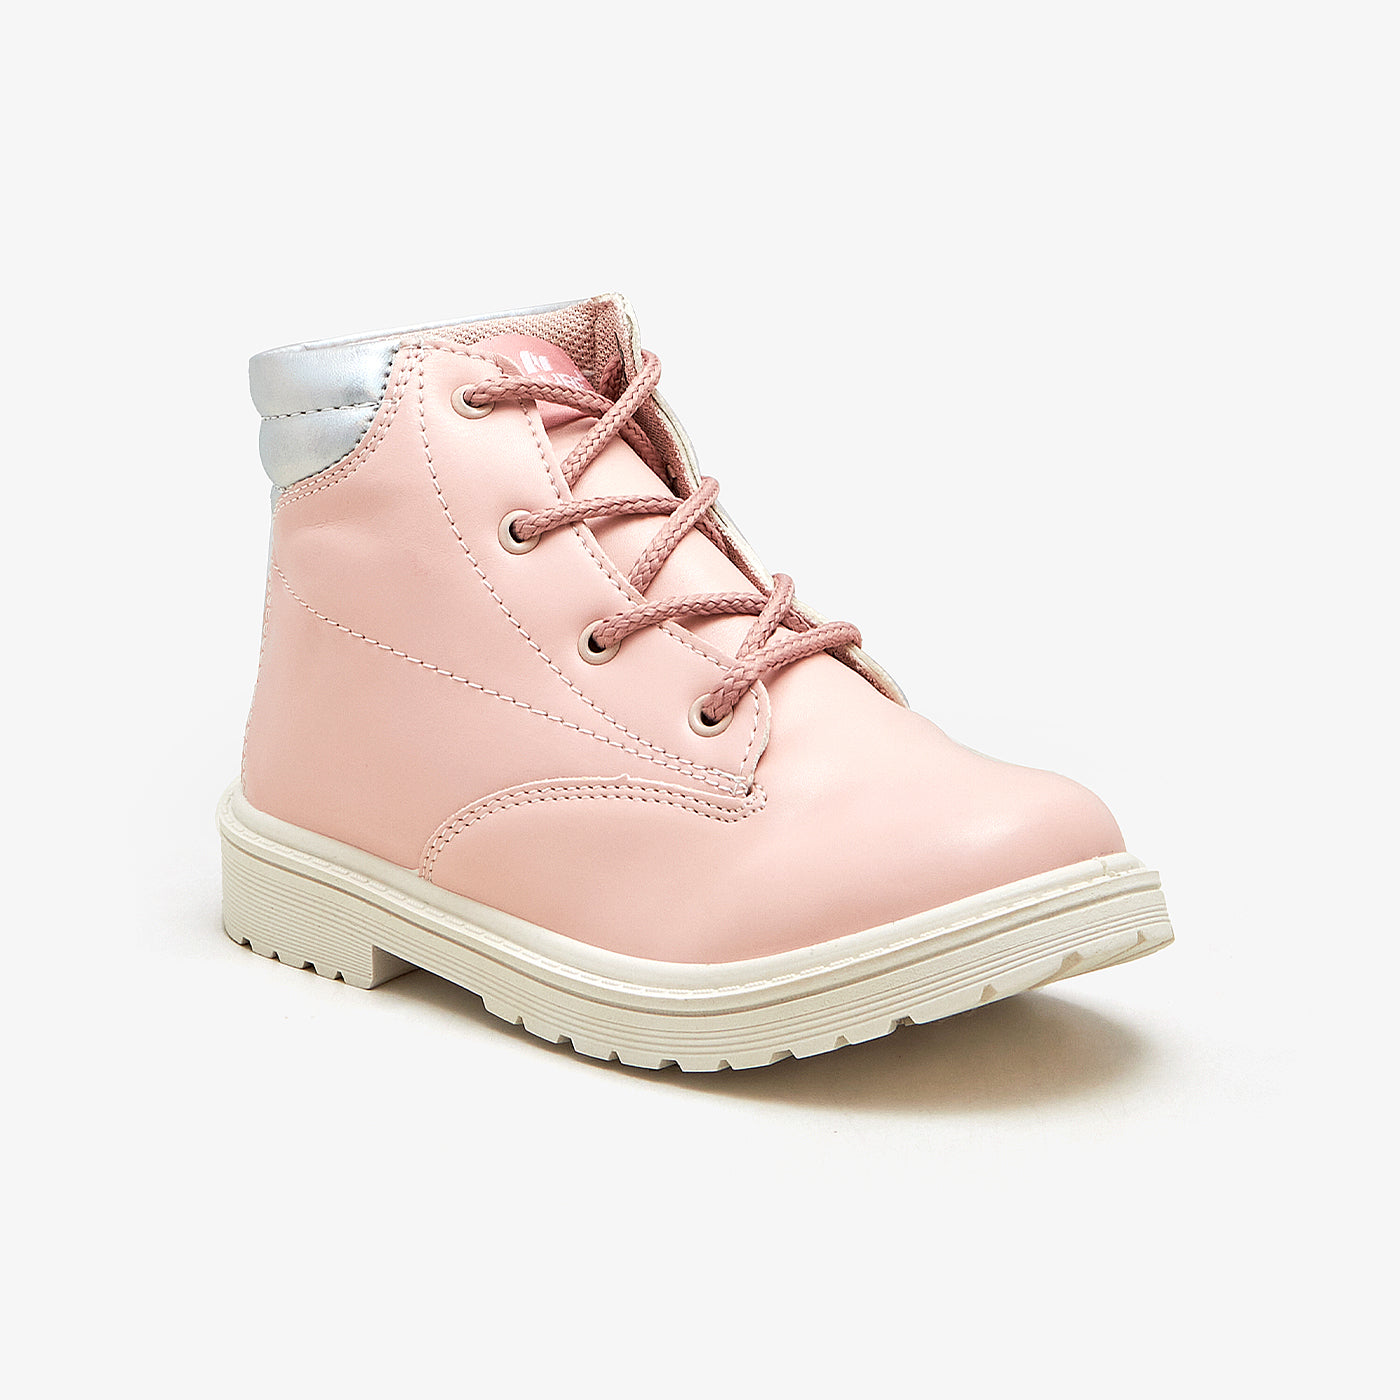 Lace Up Girls Boots Flash Sales | bellvalefarms.com